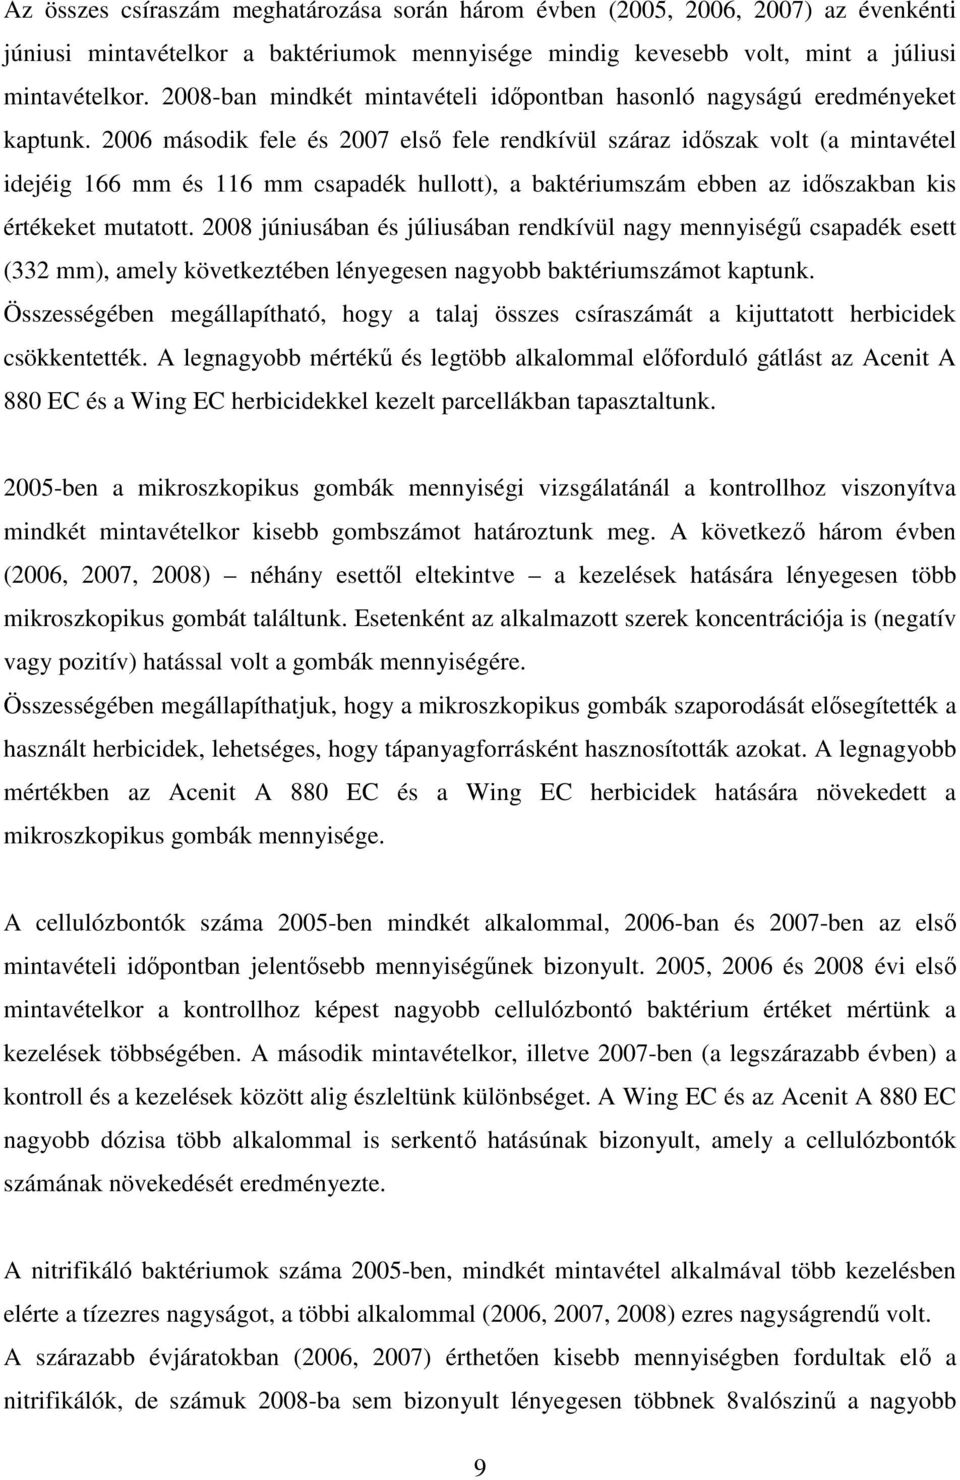 2006 második fele és 2007 elsı fele rendkívül száraz idıszak volt (a mintavétel idejéig 166 mm és 116 mm csapadék hullott), a baktériumszám ebben az idıszakban kis értékeket mutatott.